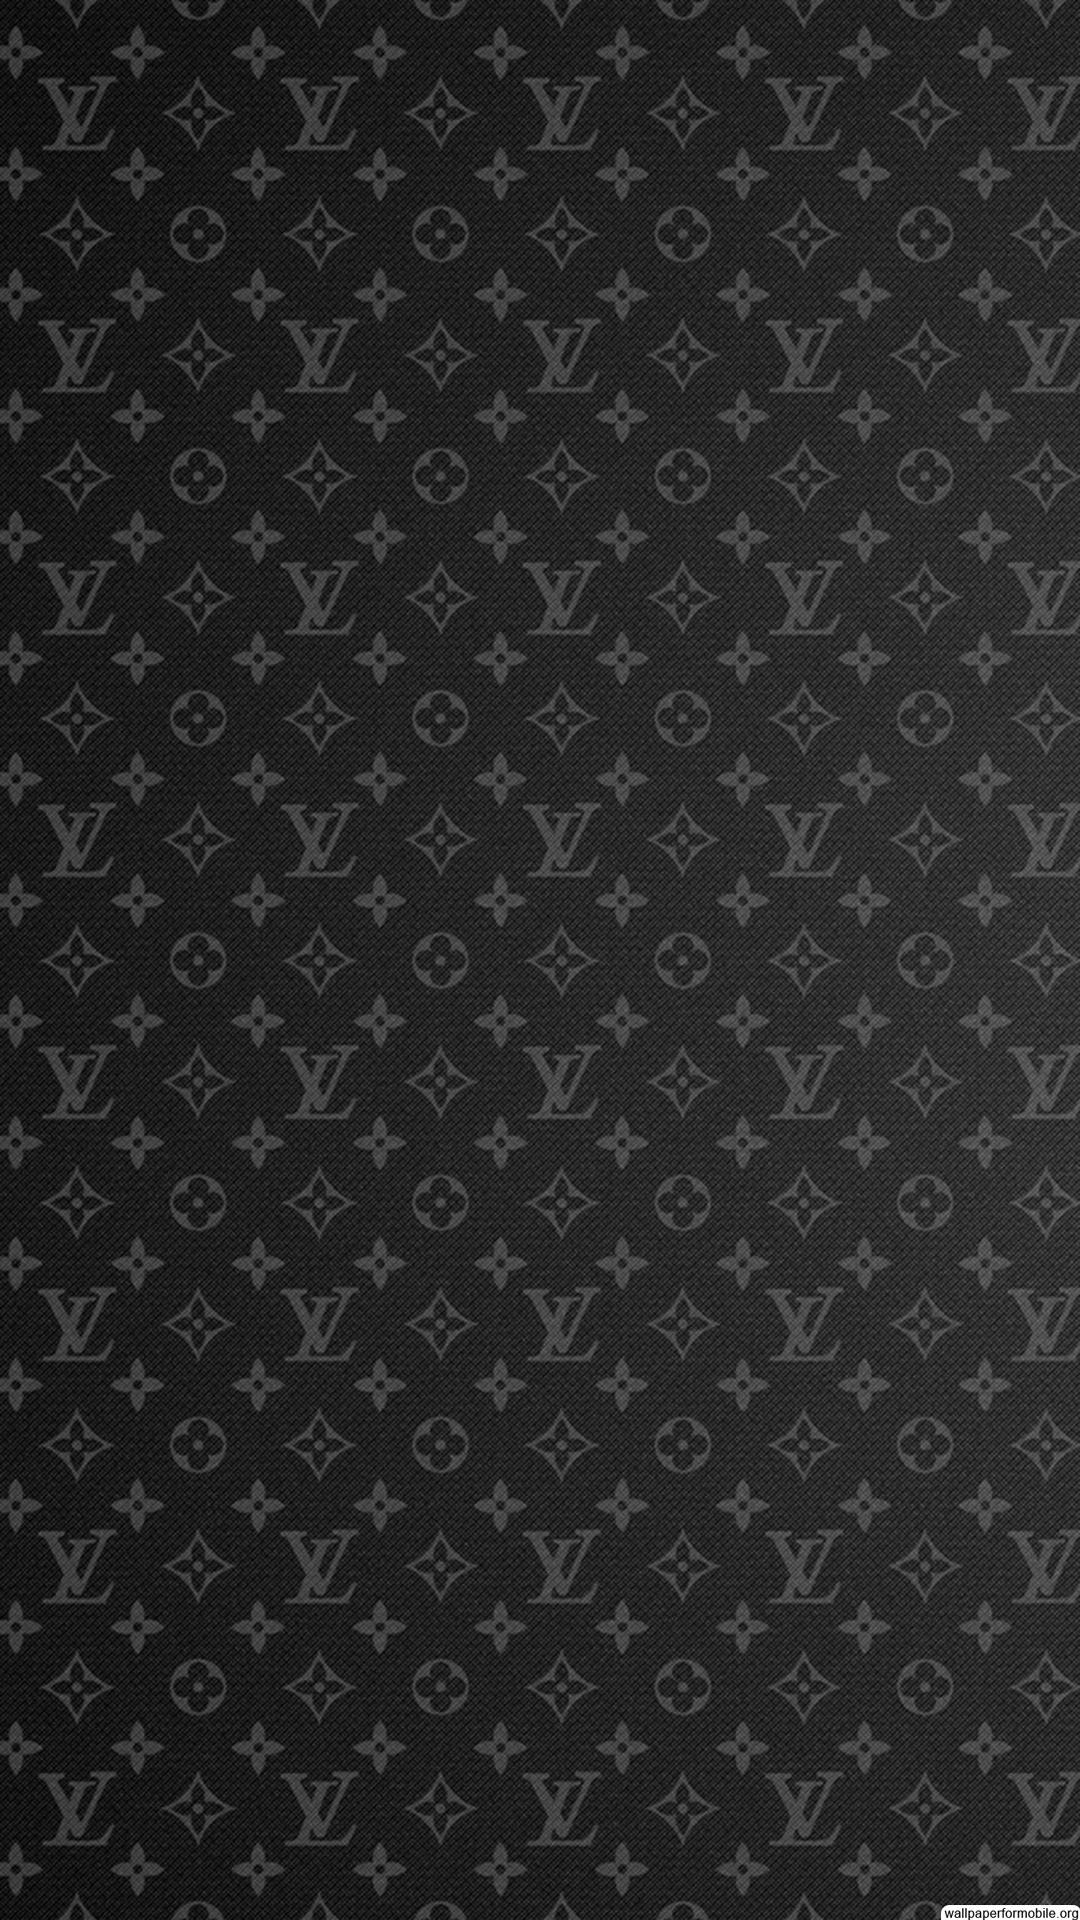 Với thiết kế mẫu Louis Vuitton Wallpaper Iphone 70, hình nền sẽ trở nên trang nhã và sang trọng hơn bao giờ hết. Với gam màu tối và họa tiết độc đáo cũng như sự kết hợp tinh tế của logo LV, bạn sẽ thấy bức ảnh của mình trở nên cao cấp và đẳng cấp hơn. Hãy trải nghiệm ngay! 